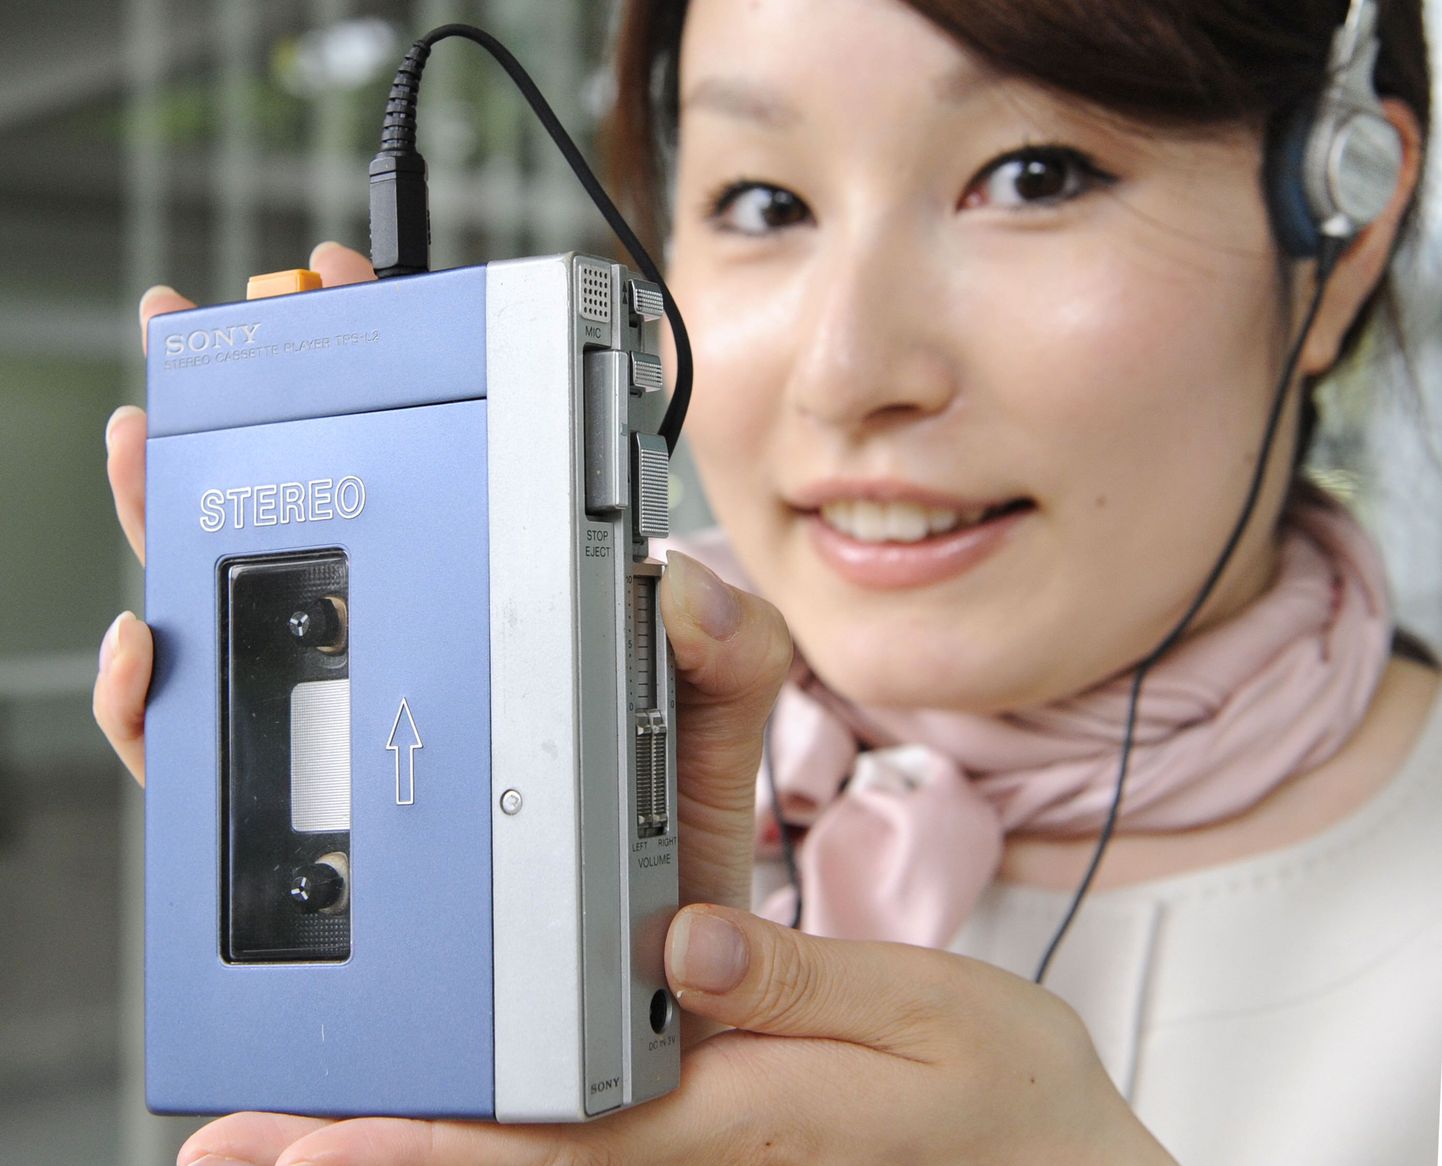 Sony töötaja demonstreerib esimest Walkmani mudelit.